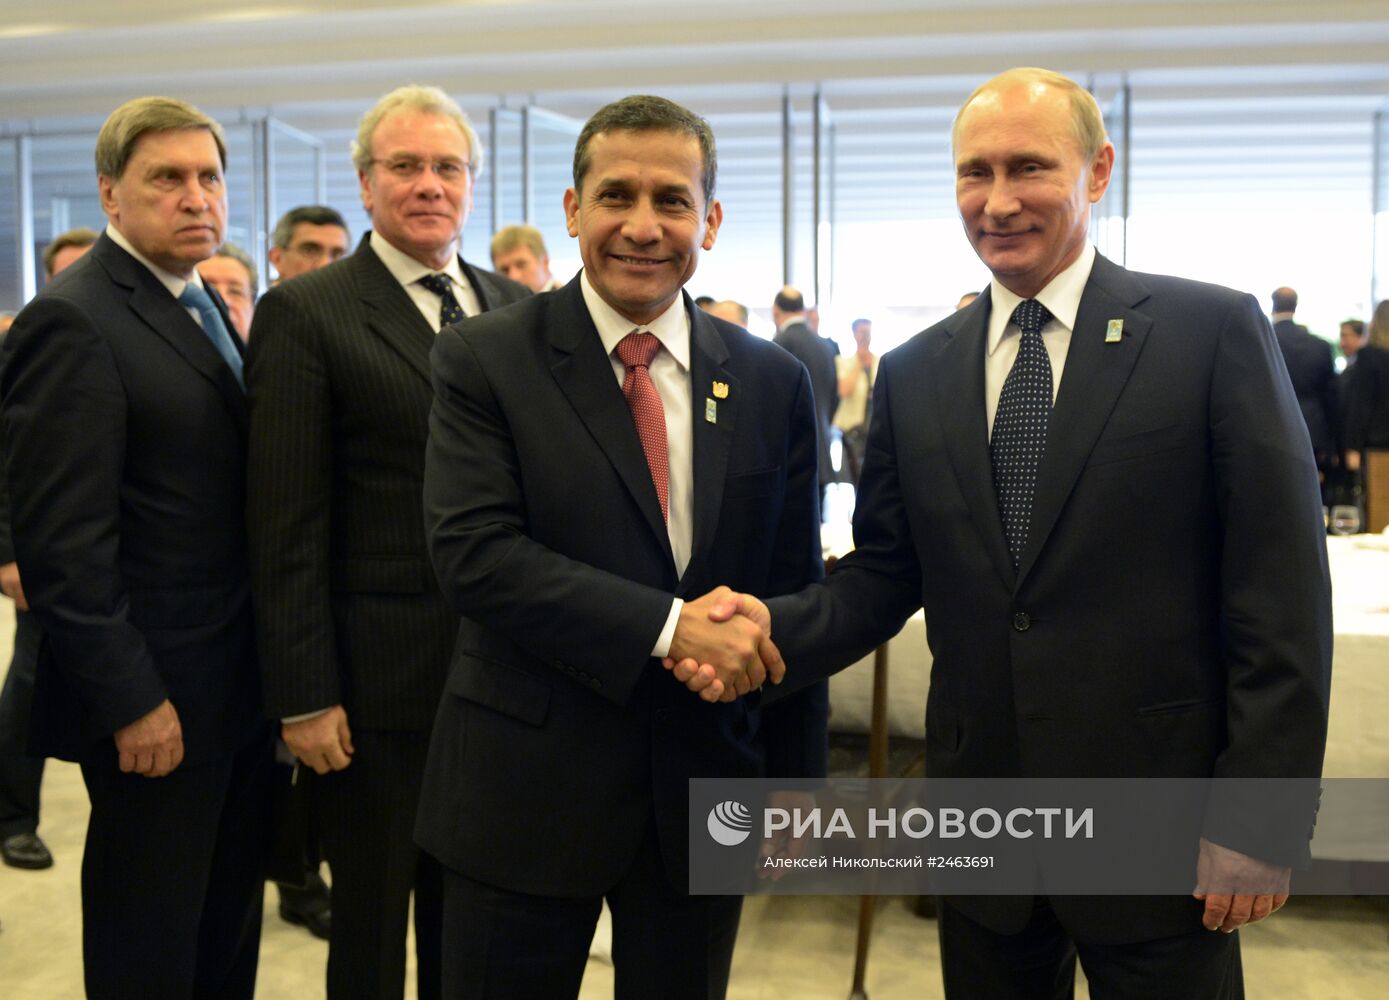 Официальный визит В.Путина в Бразилию. День четвертый